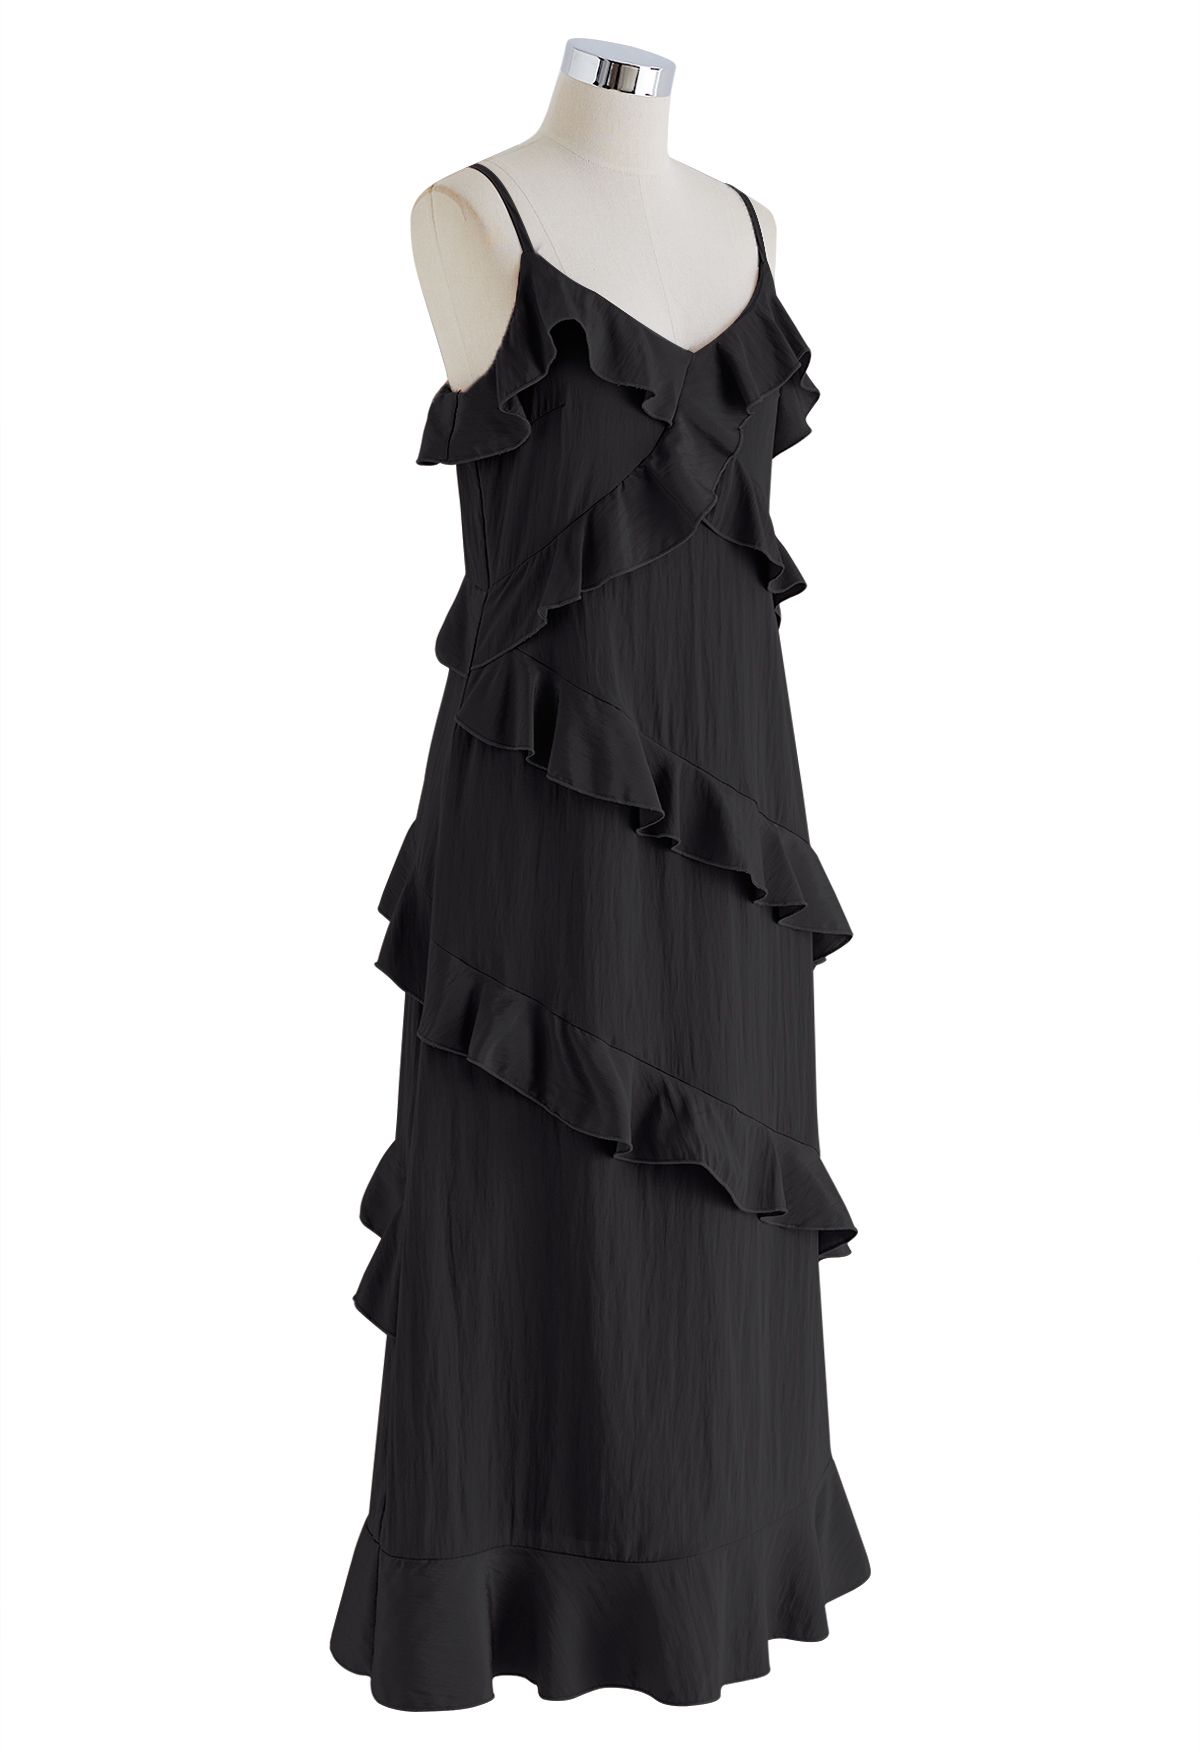 Gestuftes Cami-Kleid mit Rüschen und seitlichem Schlitz in Schwarz